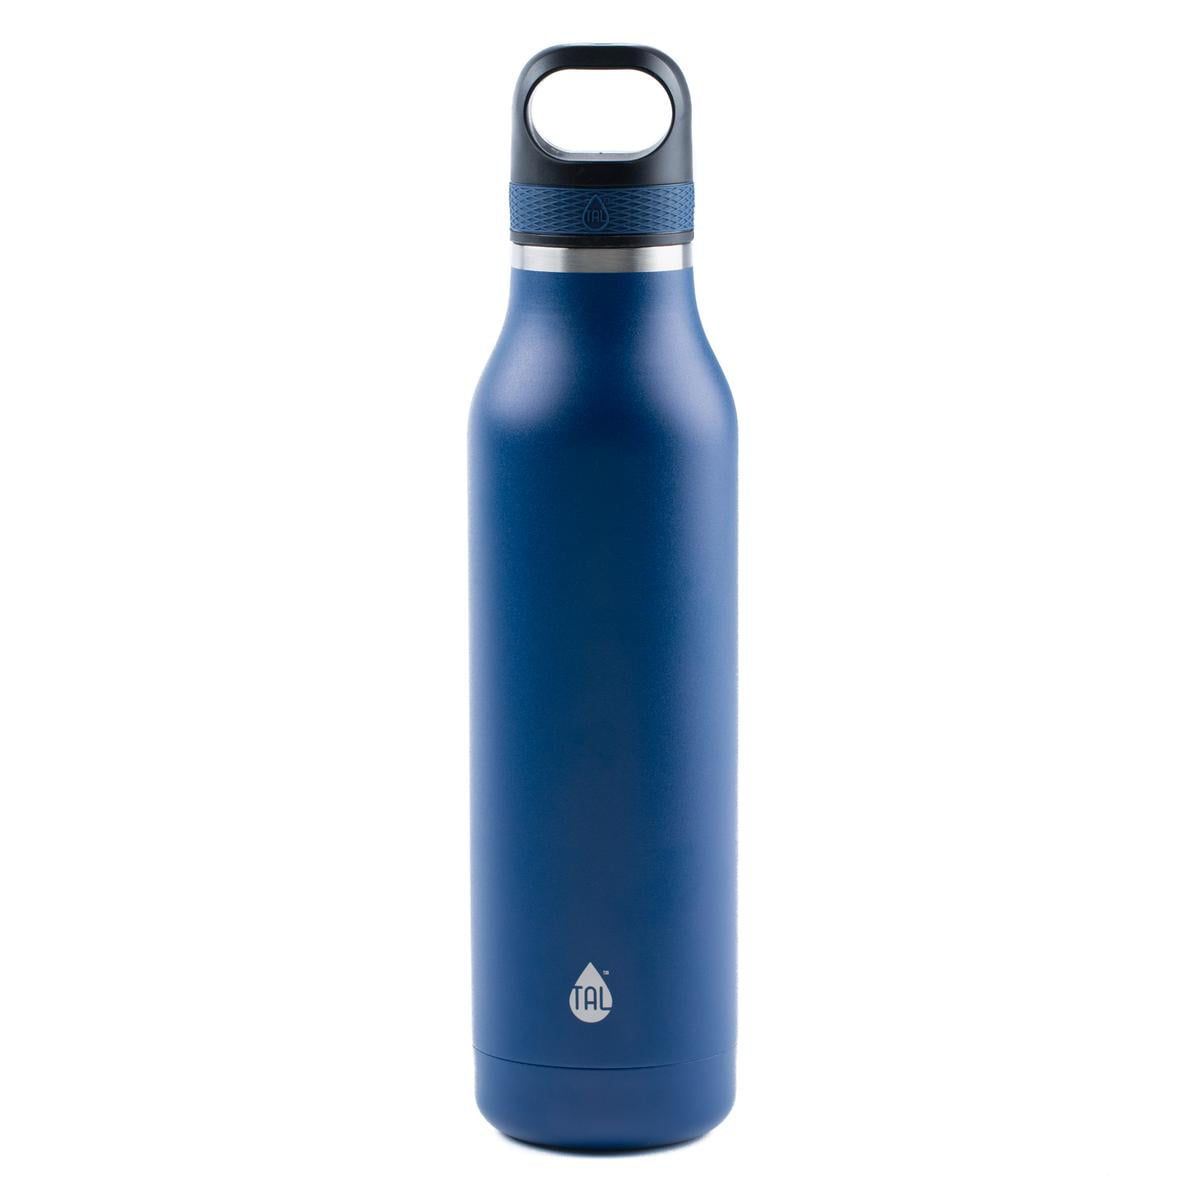 TAL Stainless Steel Shaker Water Bottle 25 fl oz, Black 